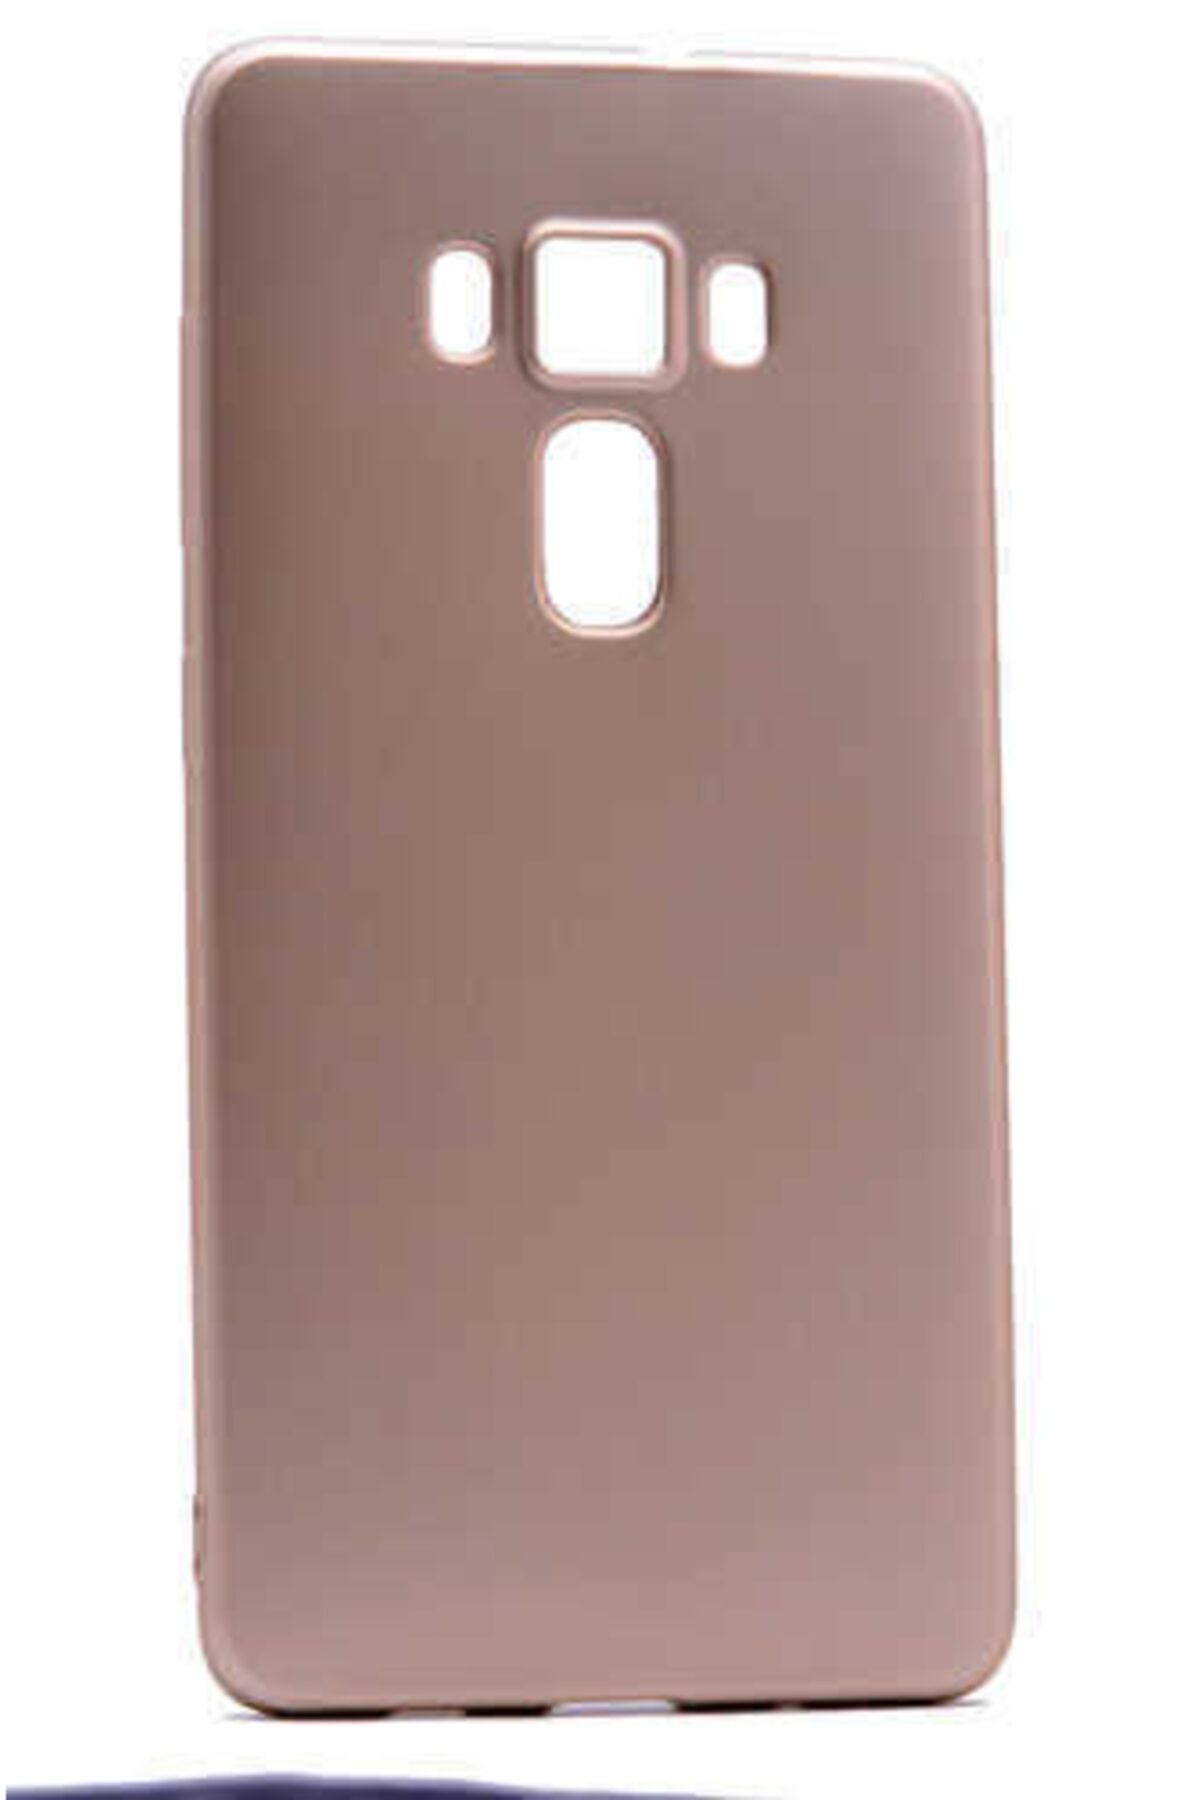 ASUS Zenfone 3 Delüxe Zs570kl Uyumlu Kılıf New Case Soft Pürüzsüz Yumuşak Ve Mat